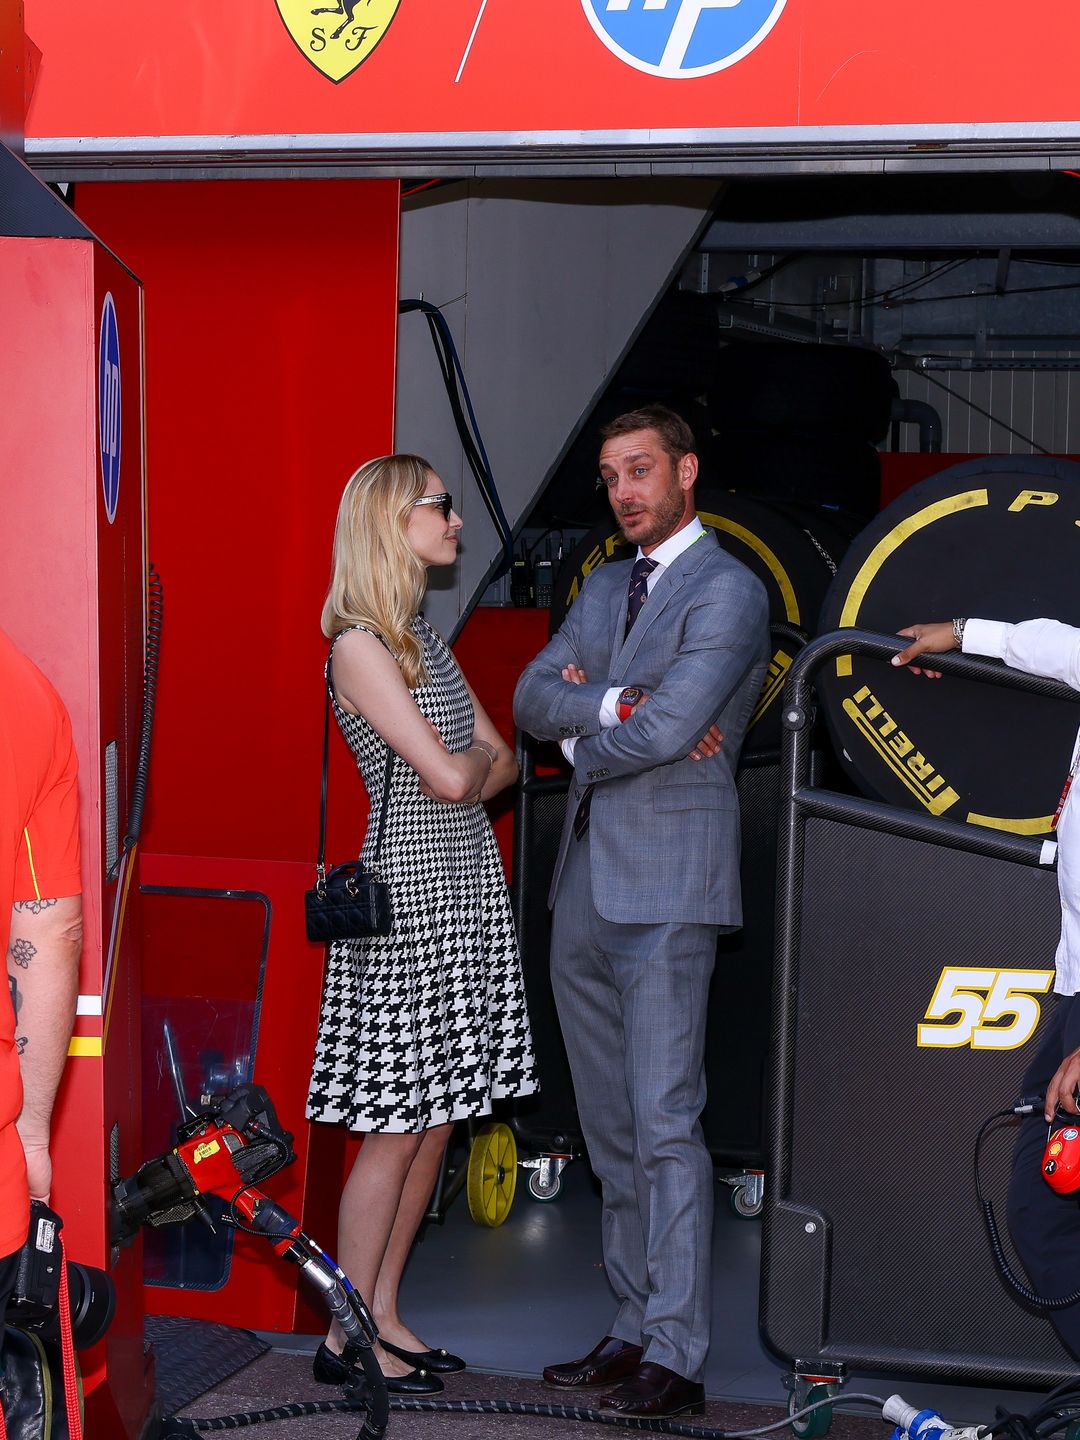 Pierre Casiraghi and Beatrice Borromeo attend the F1 Grand Prix of Monaco at Circuit de Monaco